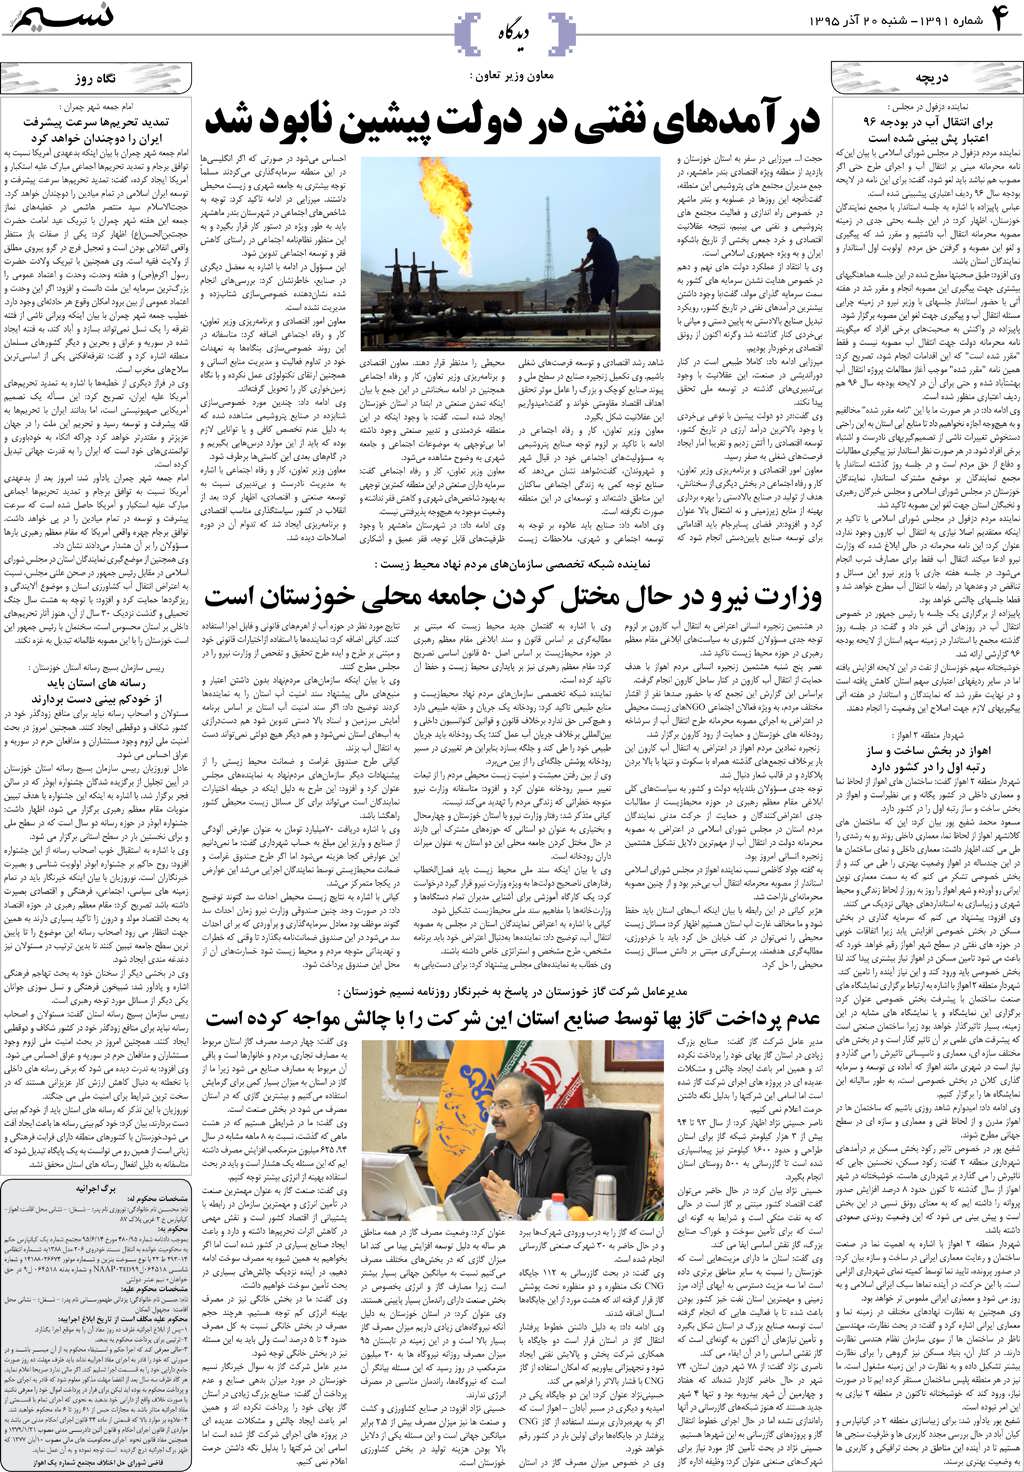 صفحه دیدگاه روزنامه نسیم شماره 1391